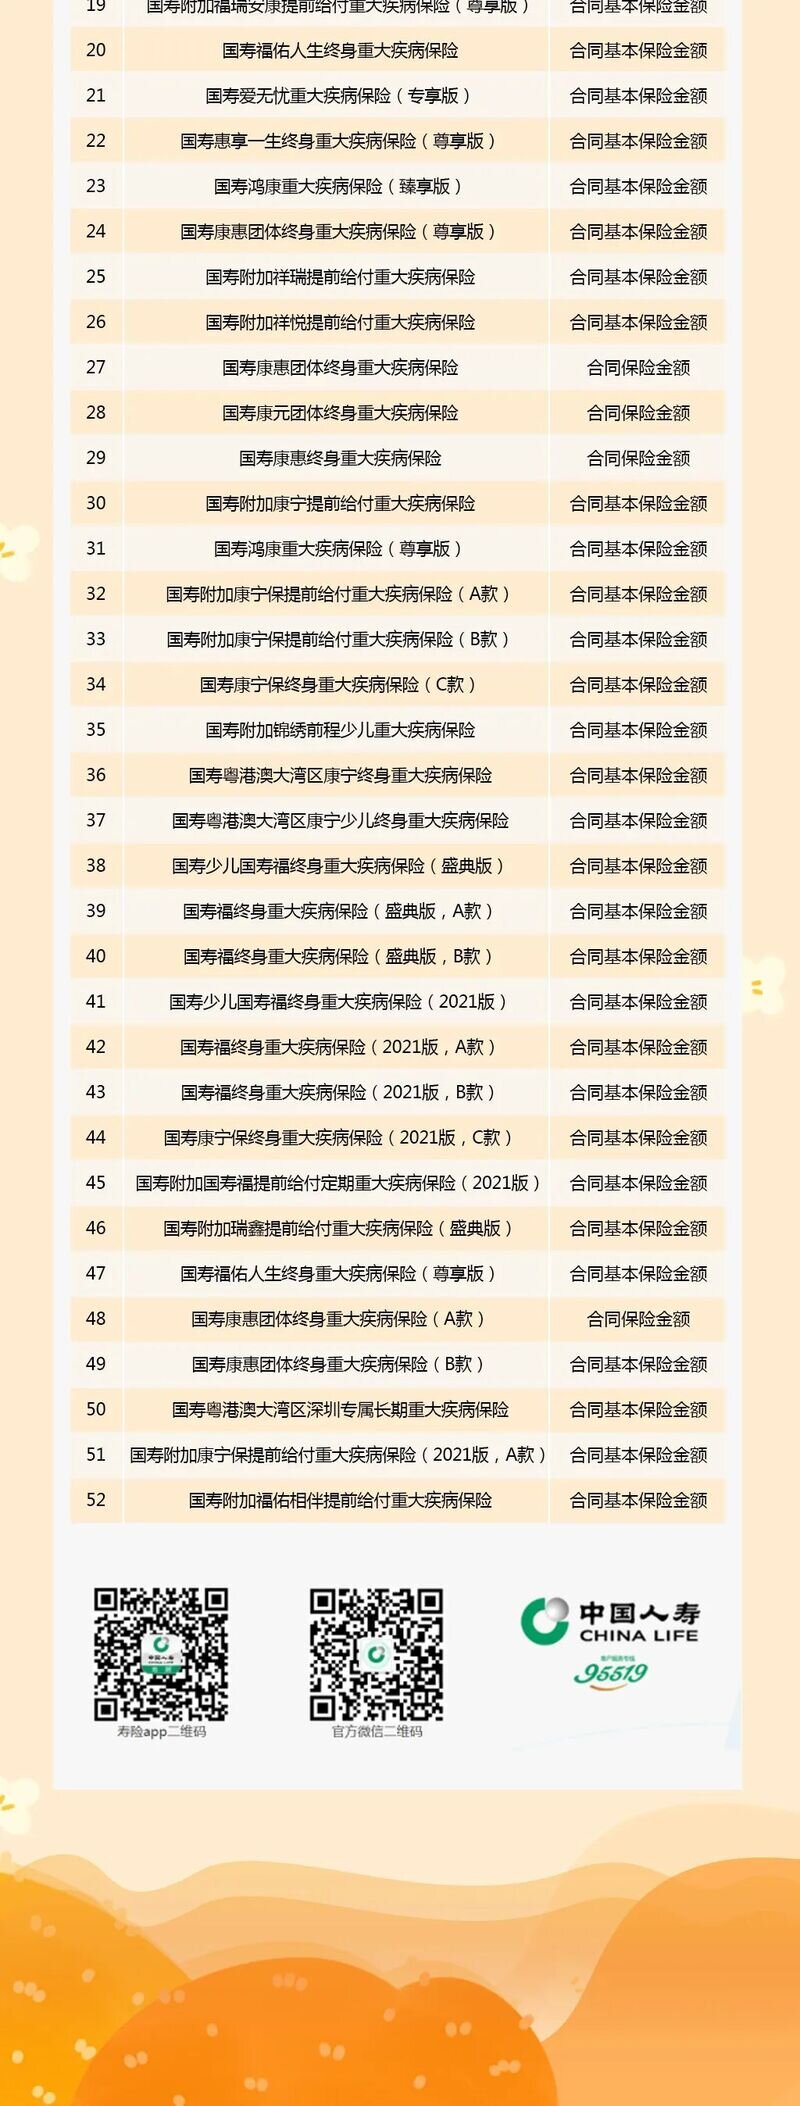 战新冠 抗疫情 中国人寿发布52款产品新冠扩展责任告知书